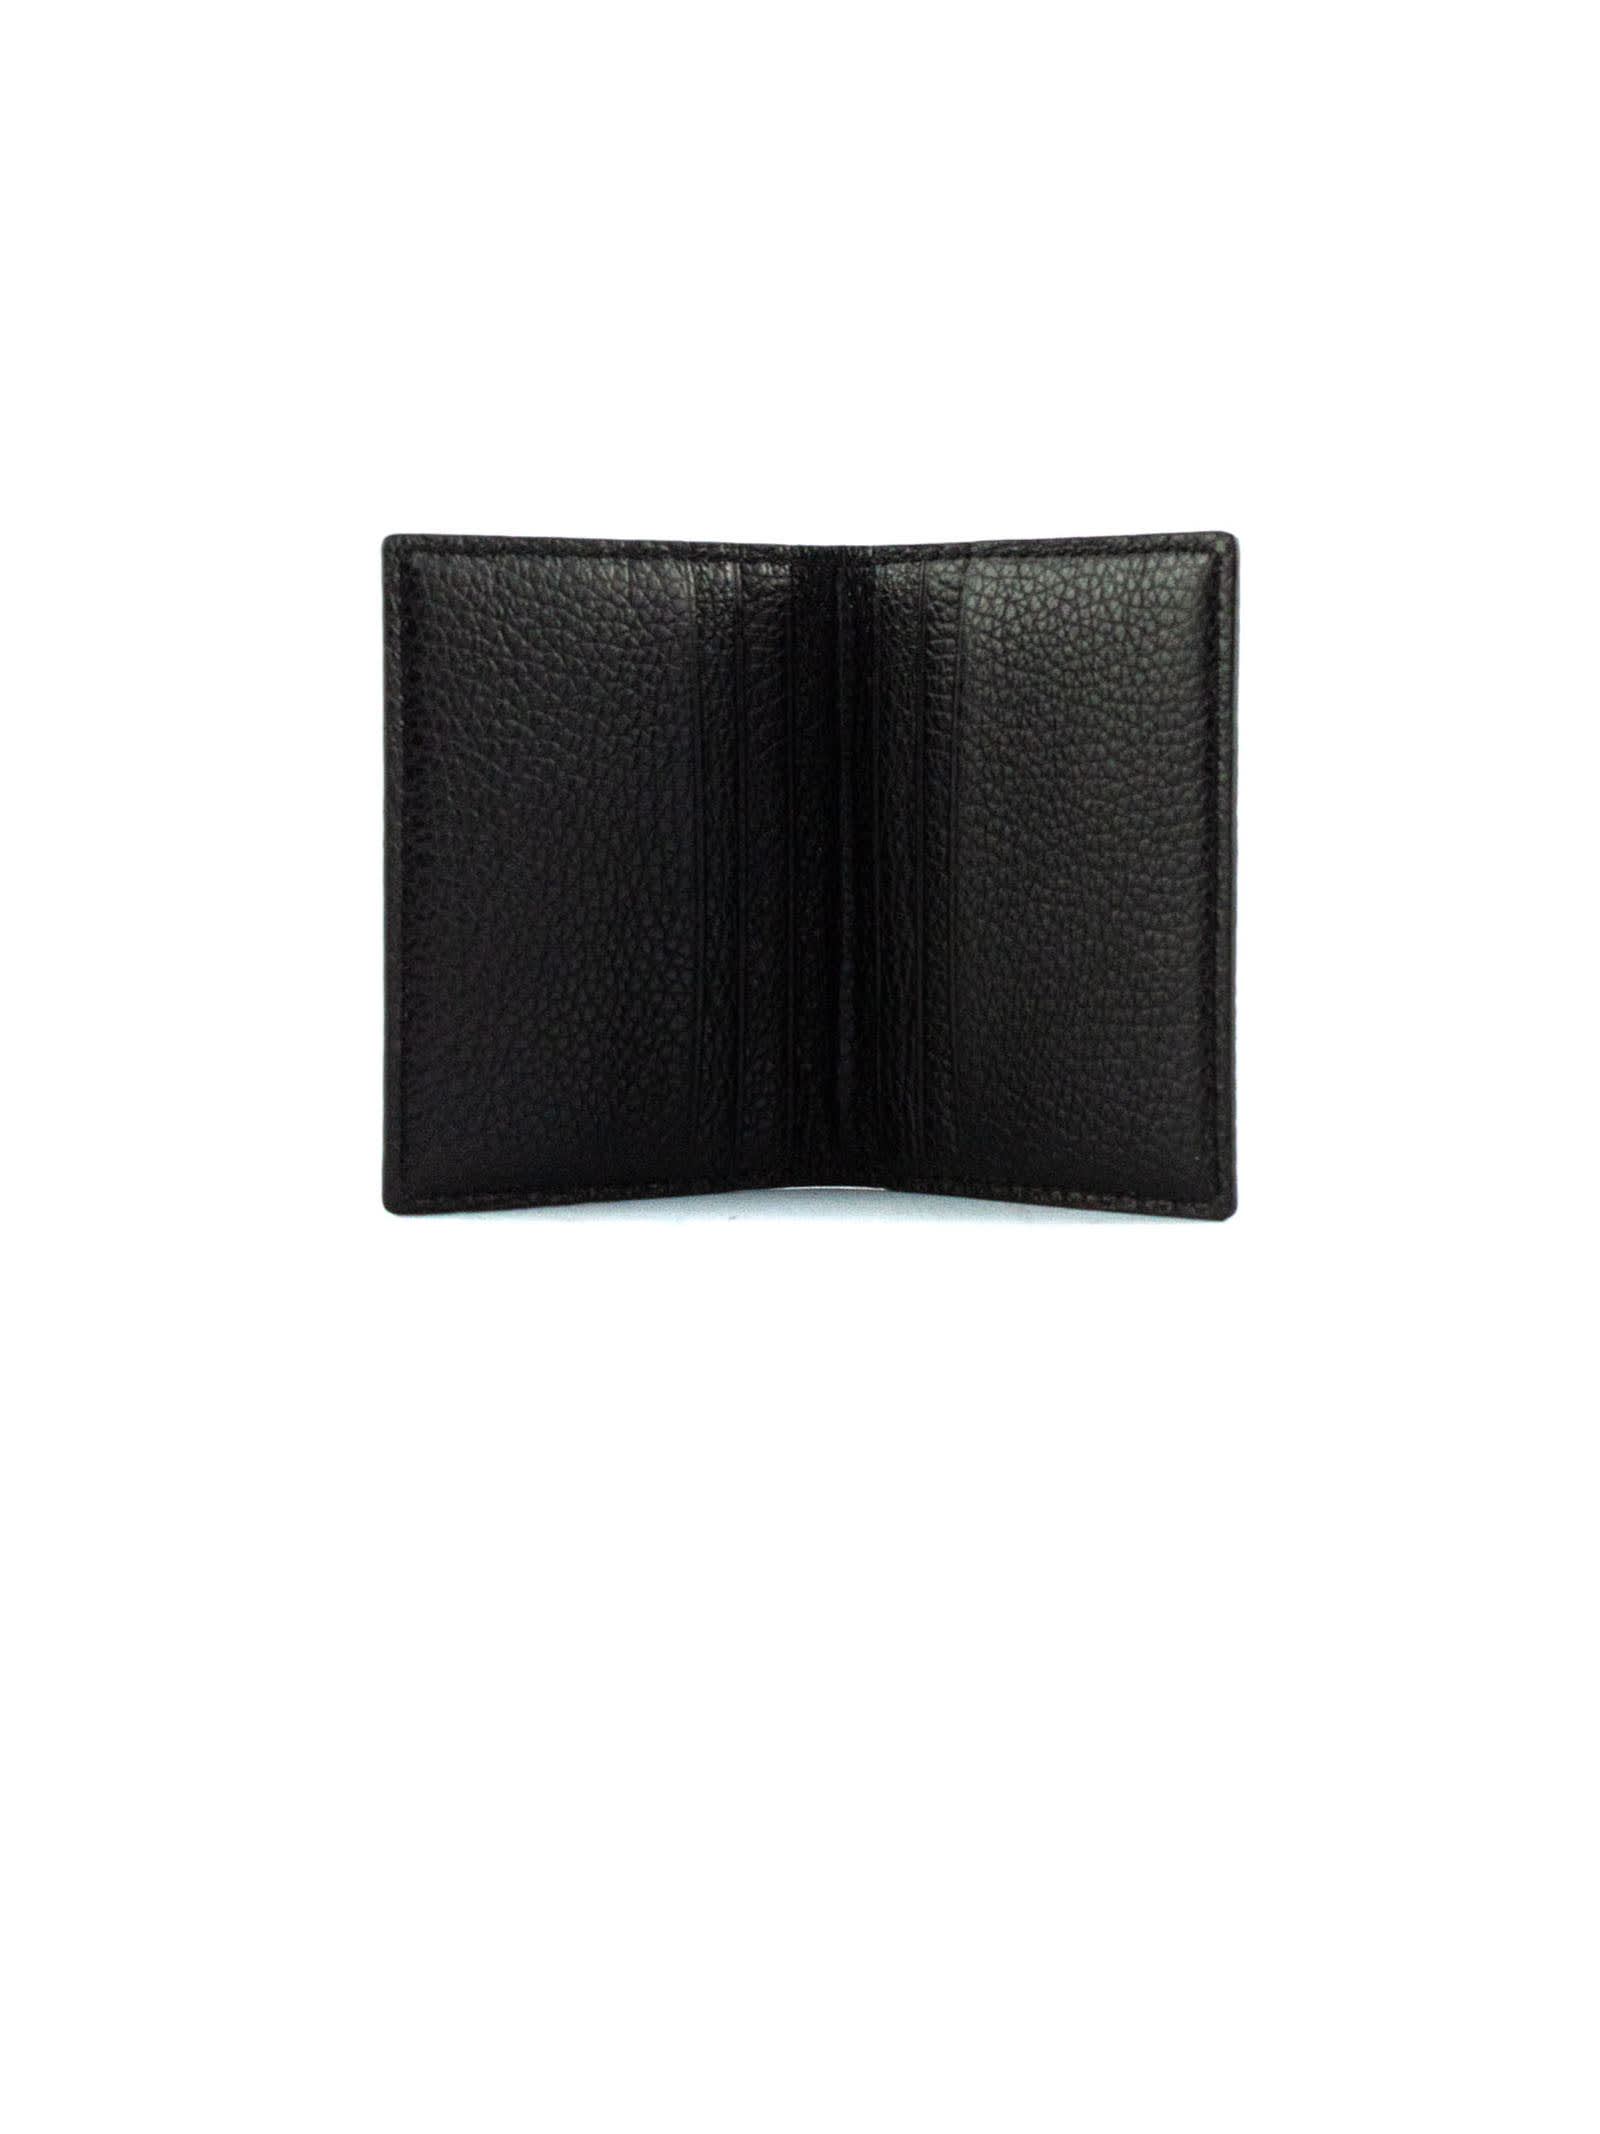 Shop Avenue 67 Black Leather Card Holder